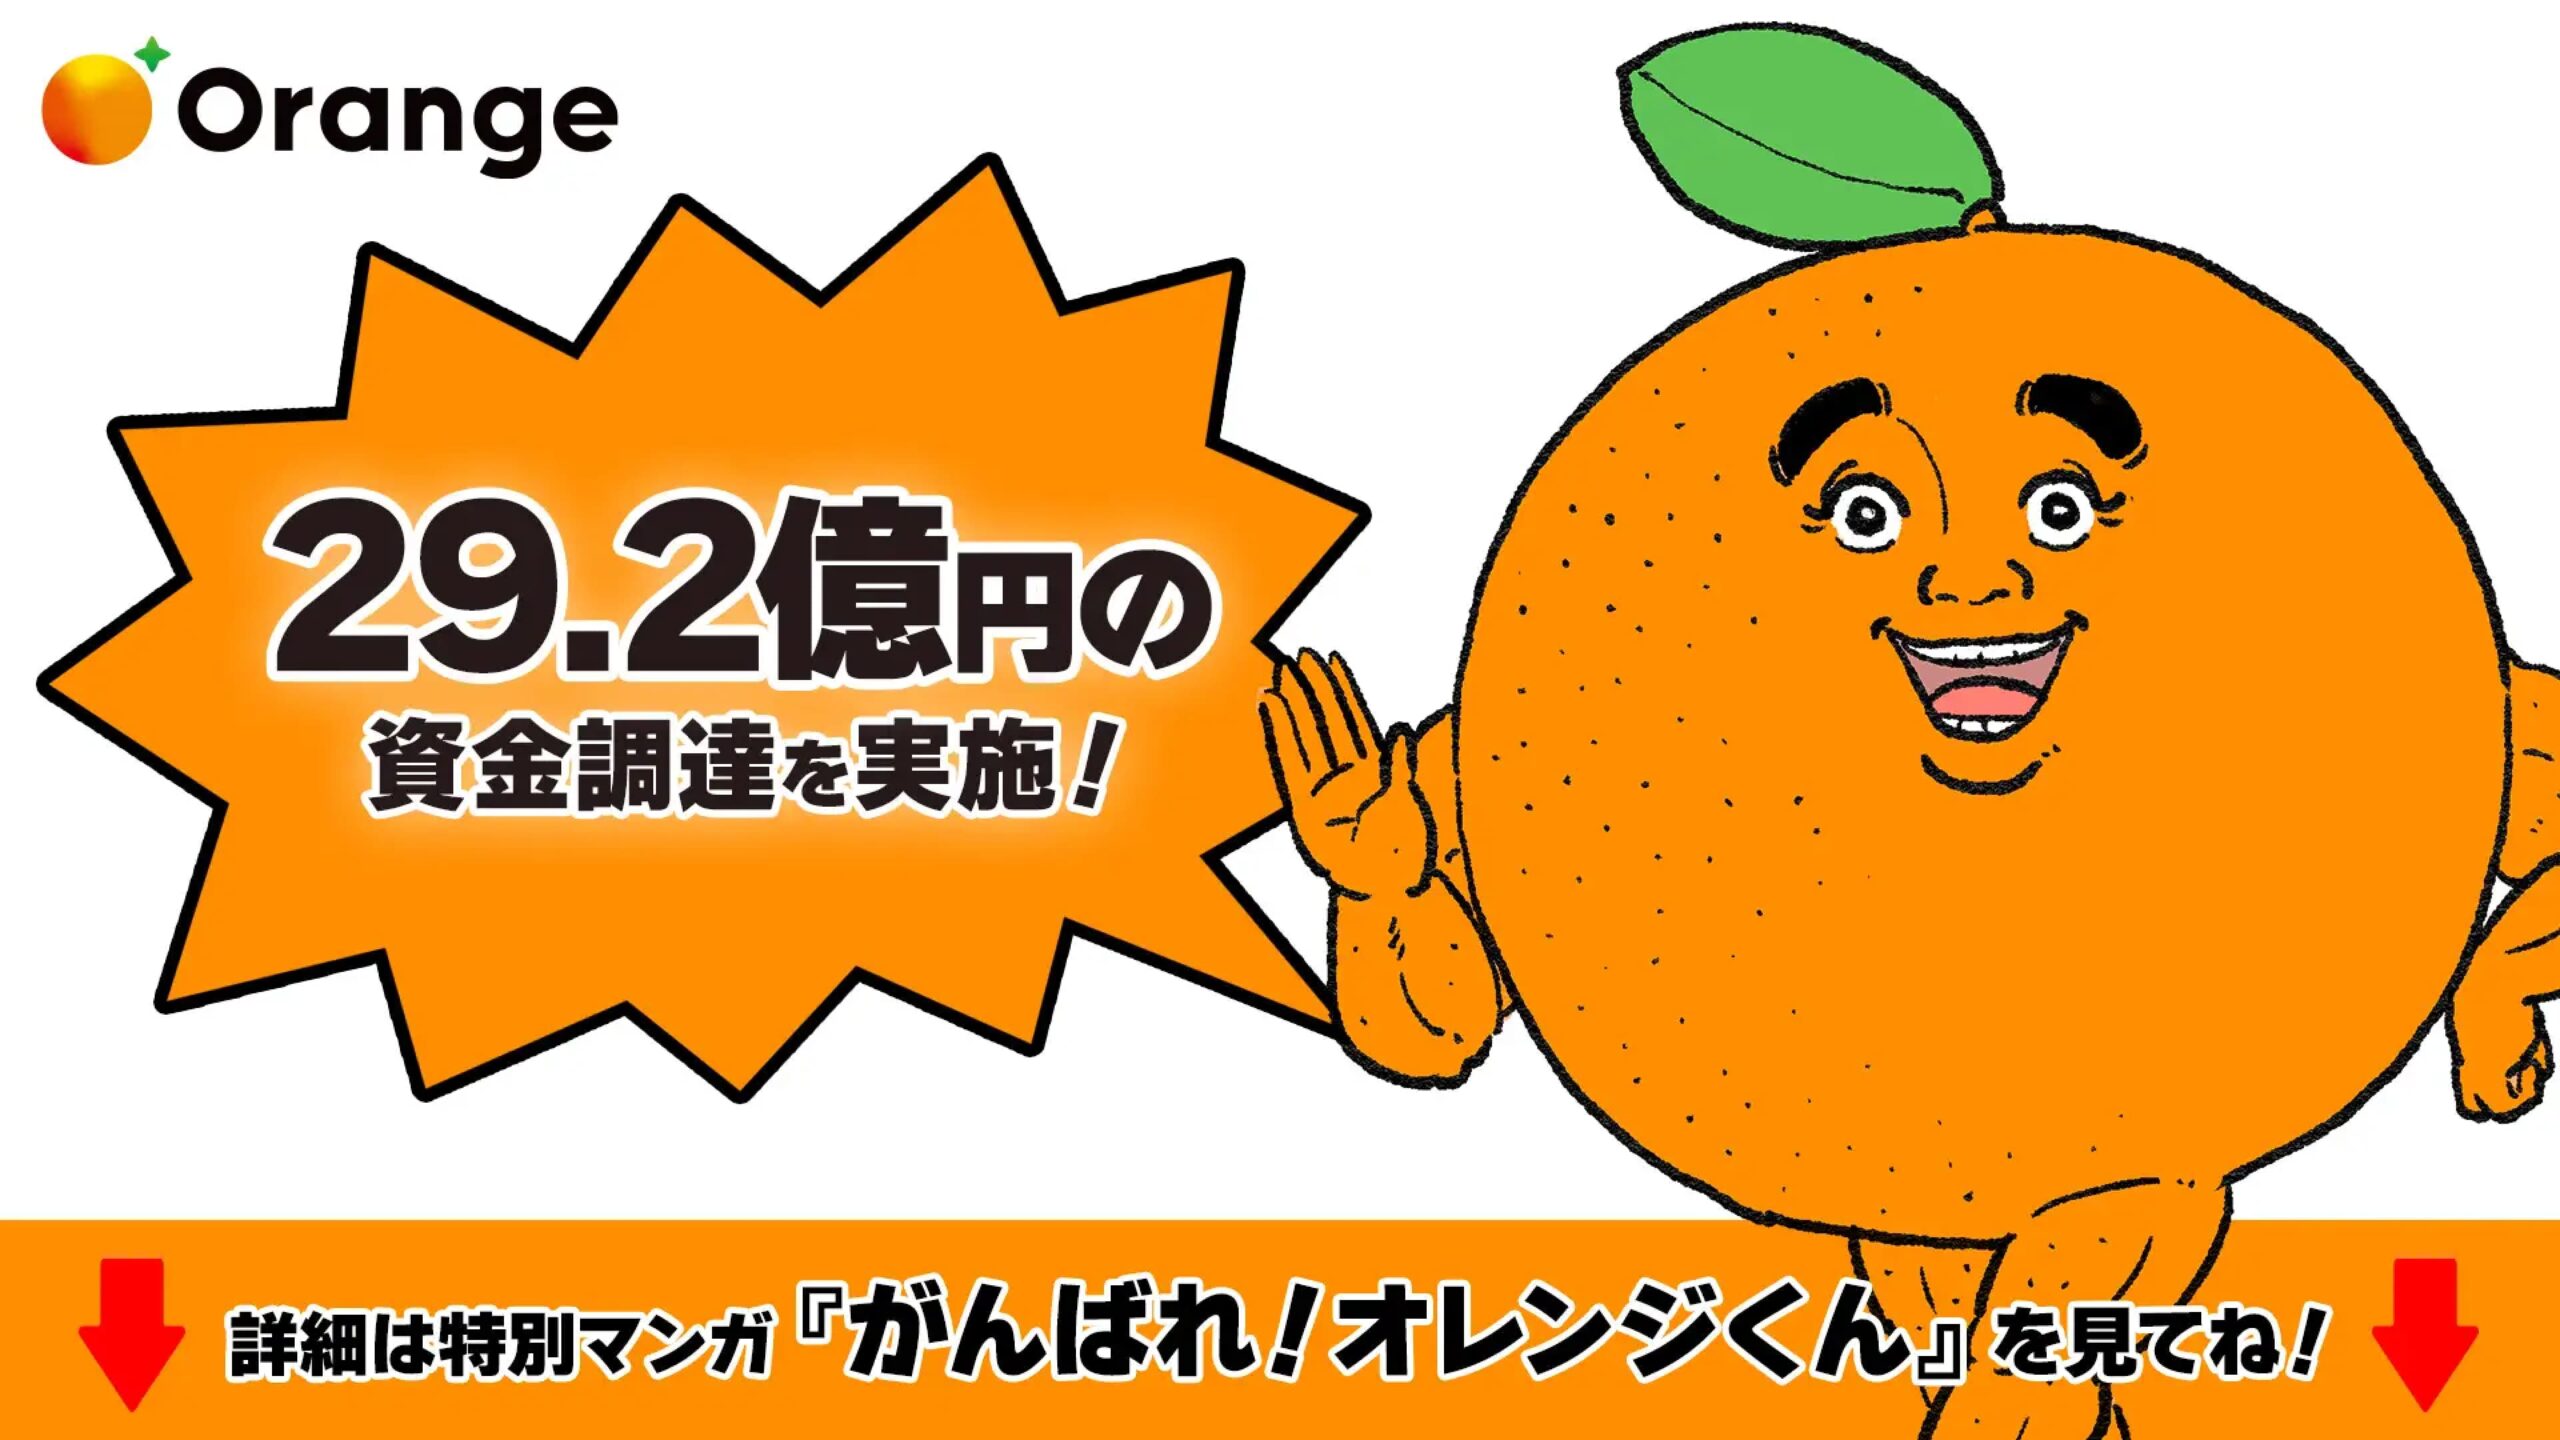 株式会社オレンジ、プレシリーズAにて総額29.2億円の資金調達を実施